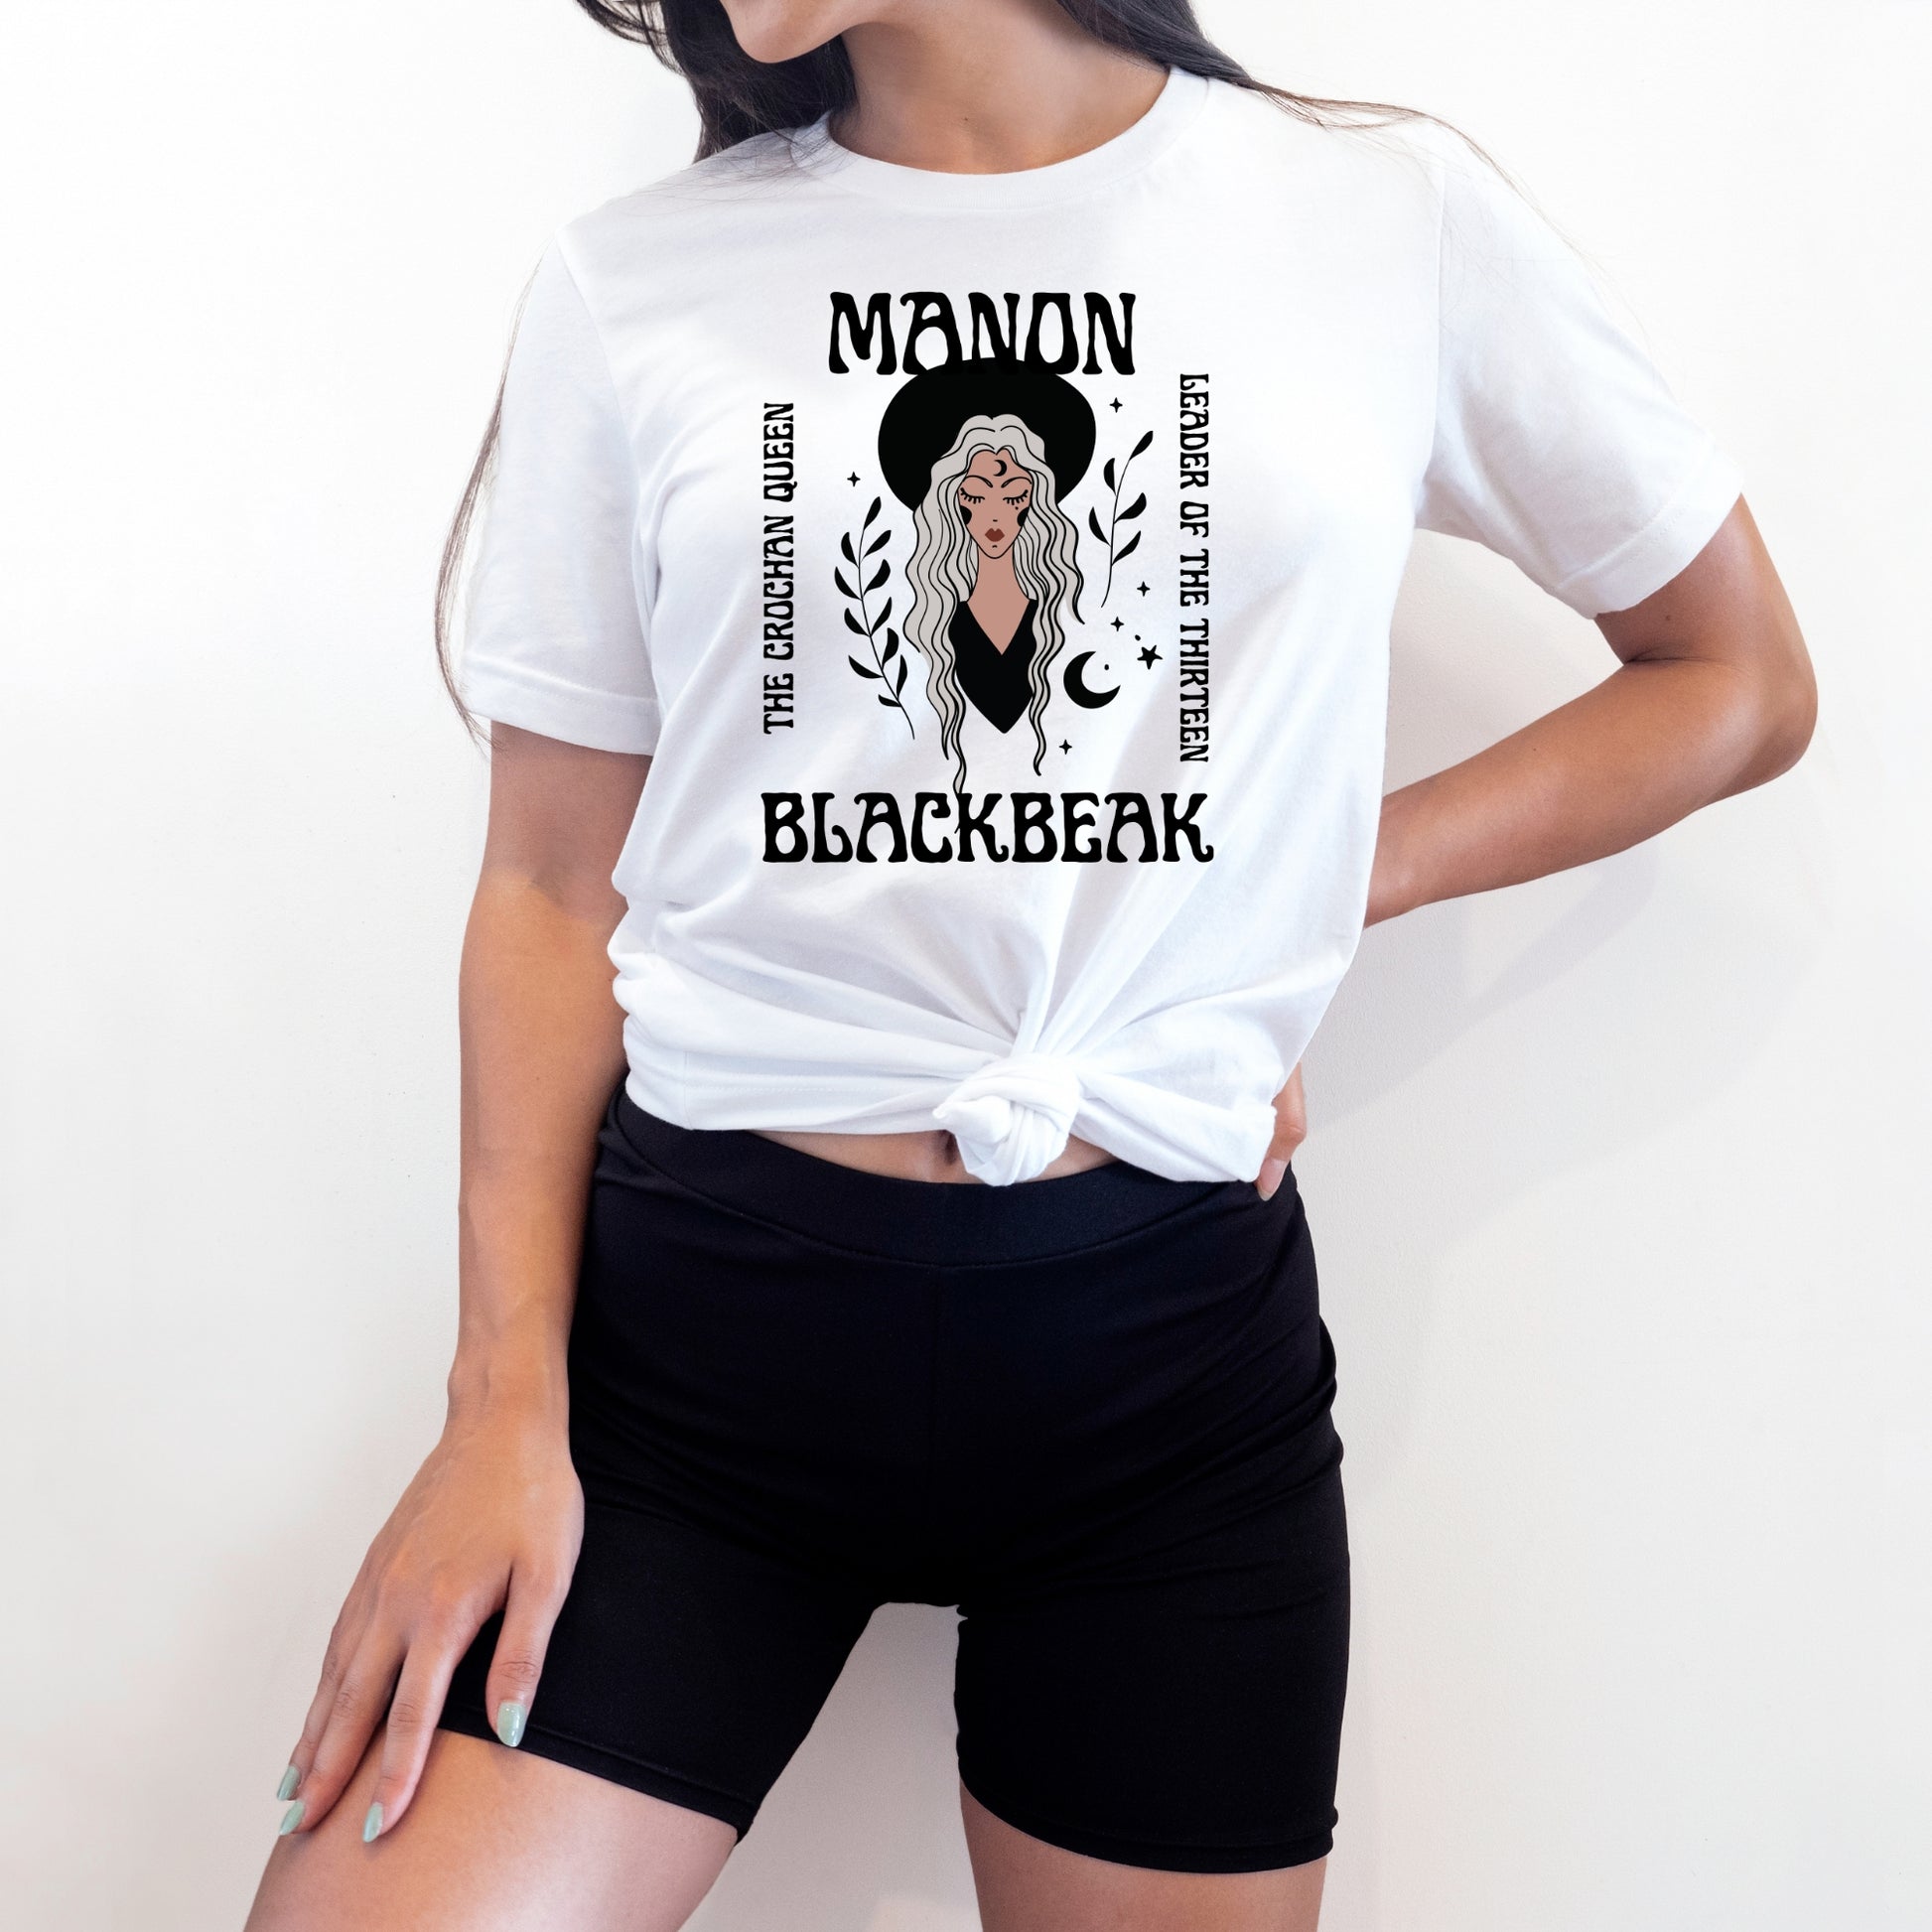 Manon Blackbeak White T-Shirt